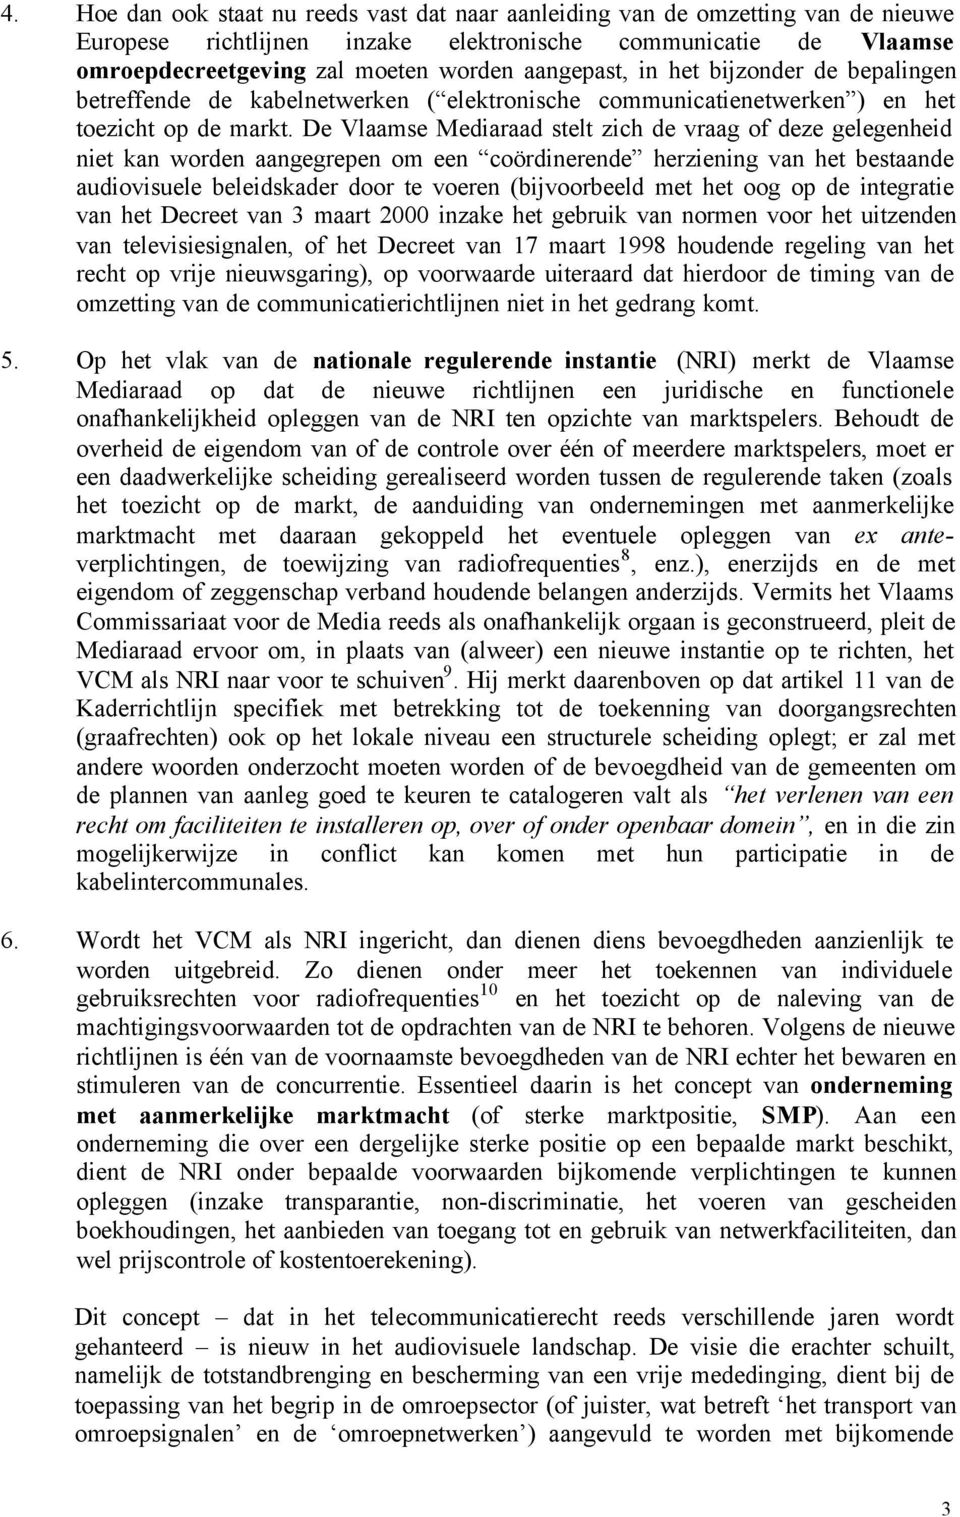 De Vlaamse Mediaraad stelt zich de vraag of deze gelegenheid niet kan worden aangegrepen om een coördinerende herziening van het bestaande audiovisuele beleidskader door te voeren (bijvoorbeeld met